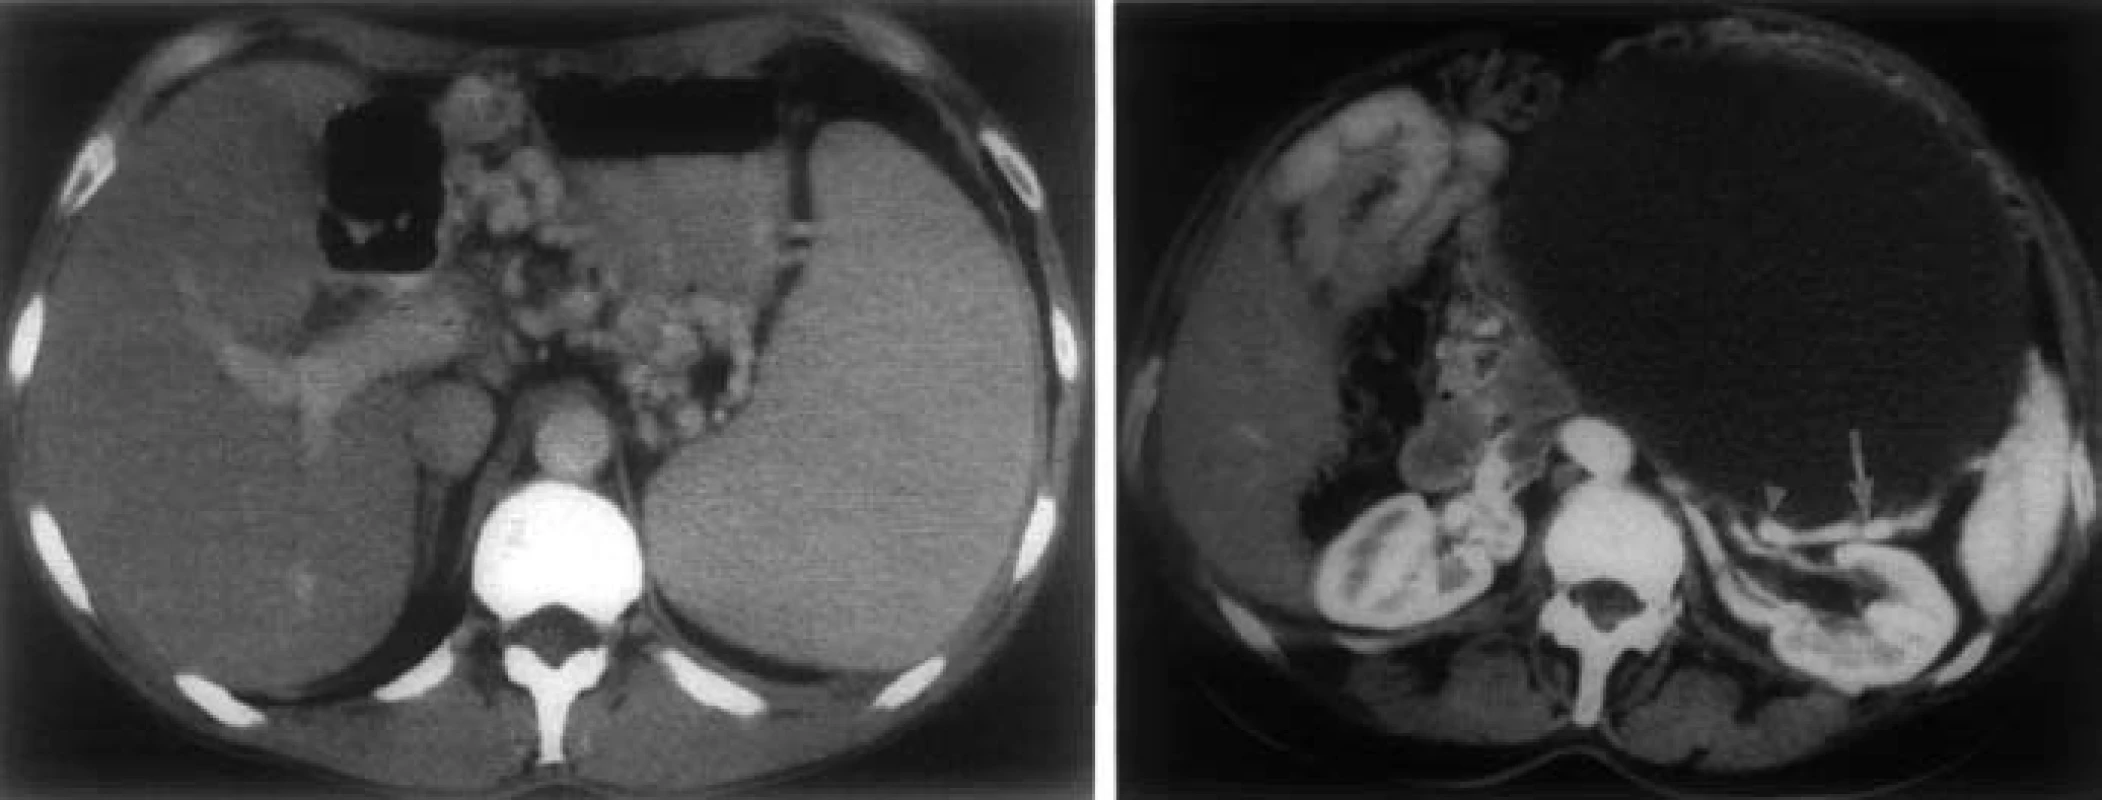 CT nález pri SPH. A – splenomegália, masívne gastrické varixy, B – pankreatický cystadenom. Lienálna véna (šípka) je uložená tesne za zadnou stenou TU a javí sa prerušená (trojuholník) [8].
Fig. 7. CT findings in SPH. A – splenomegaly, massive gastric varices, B – pancreatic cystadenoma. Splenic vein (arrow) is placed just behind the posterior wall of the tumor and appears broken (triangle) [8].